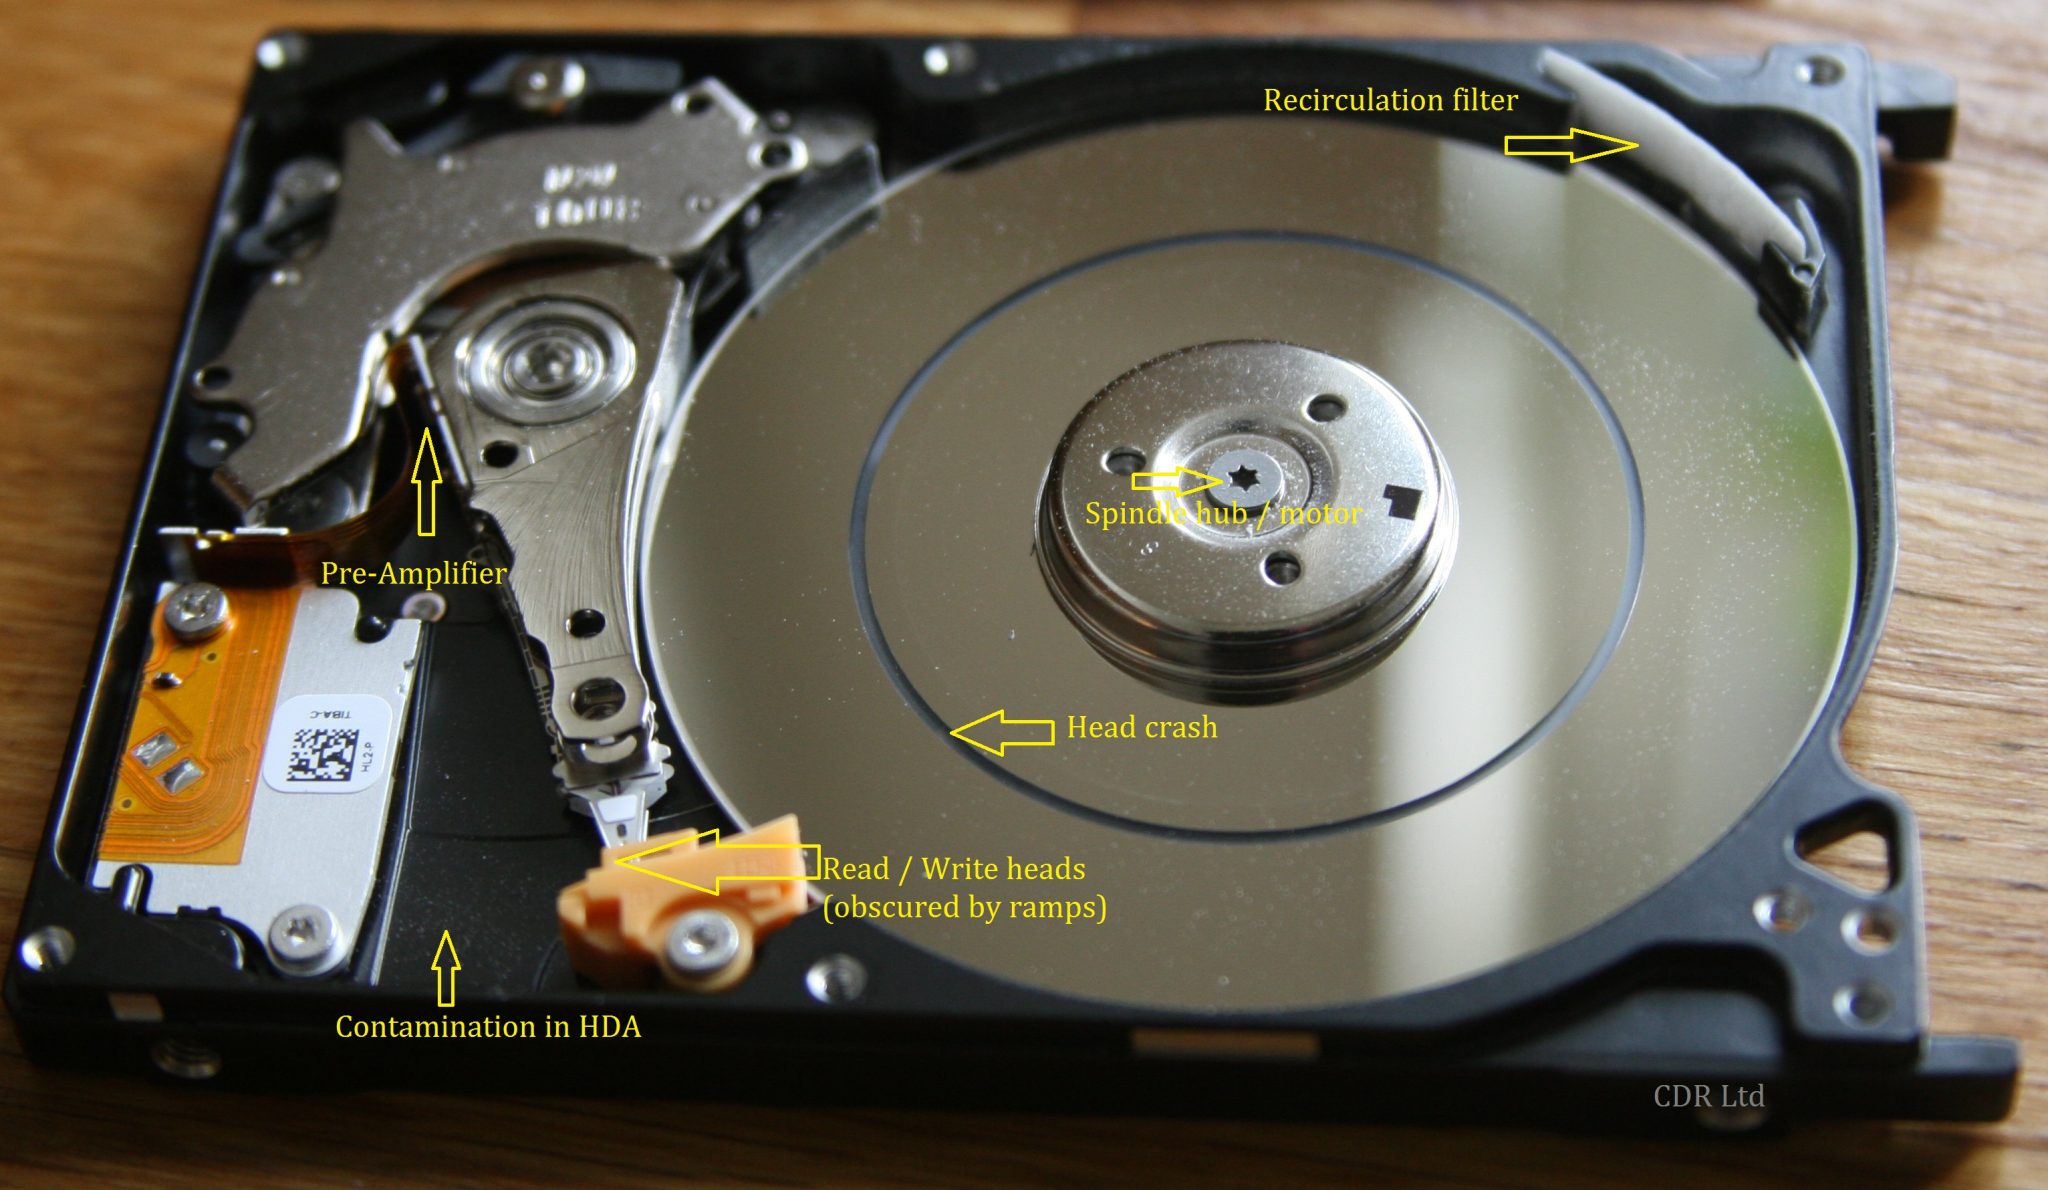 inside hard disk